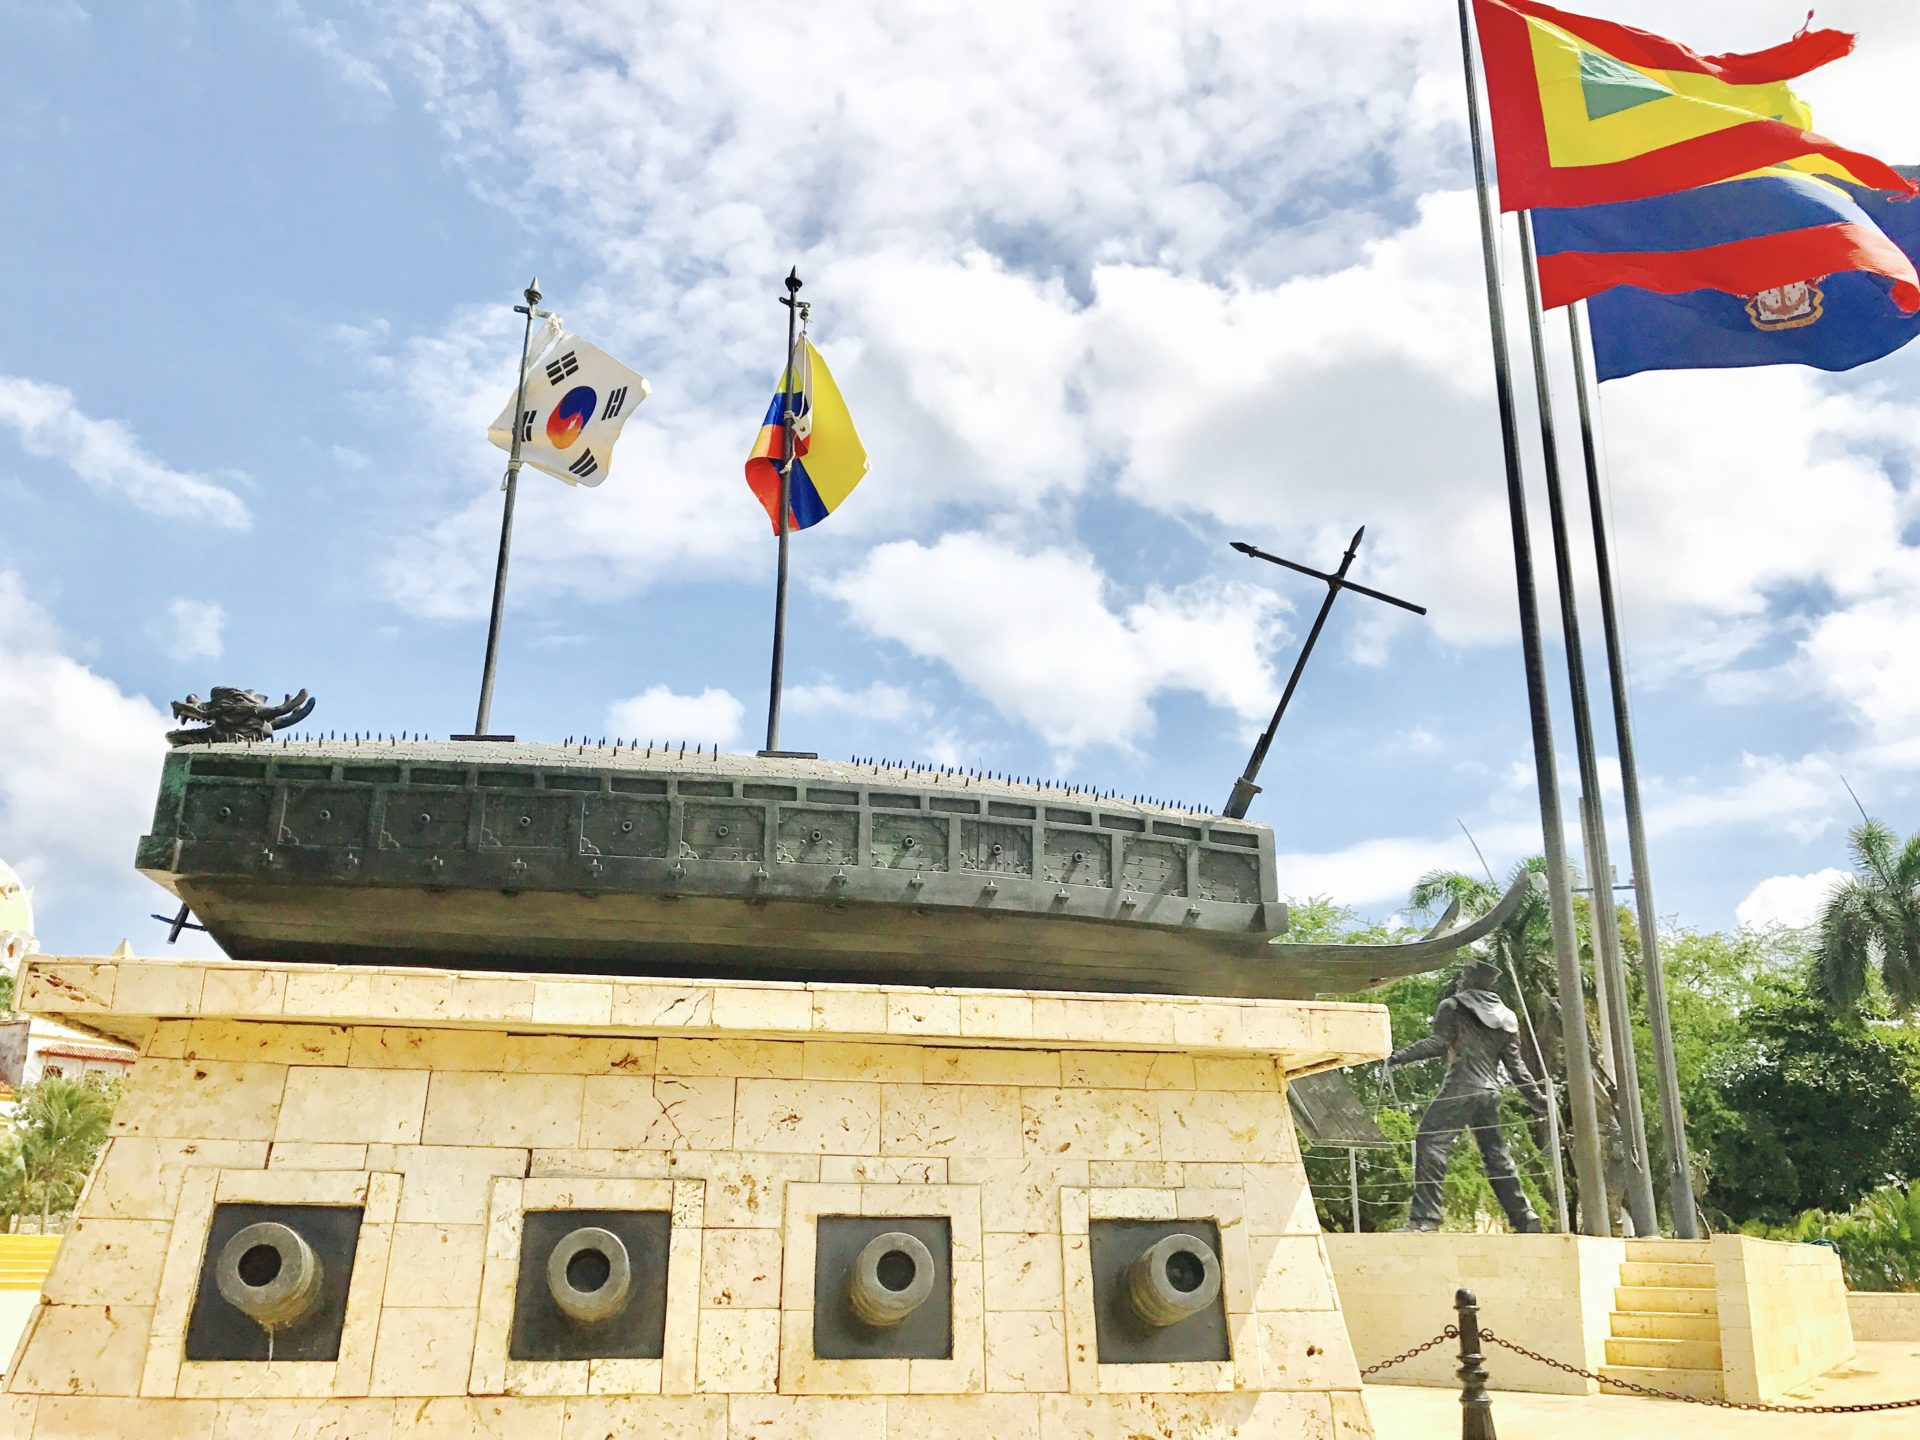 Korean War Memorials - Cartagena - Colombia